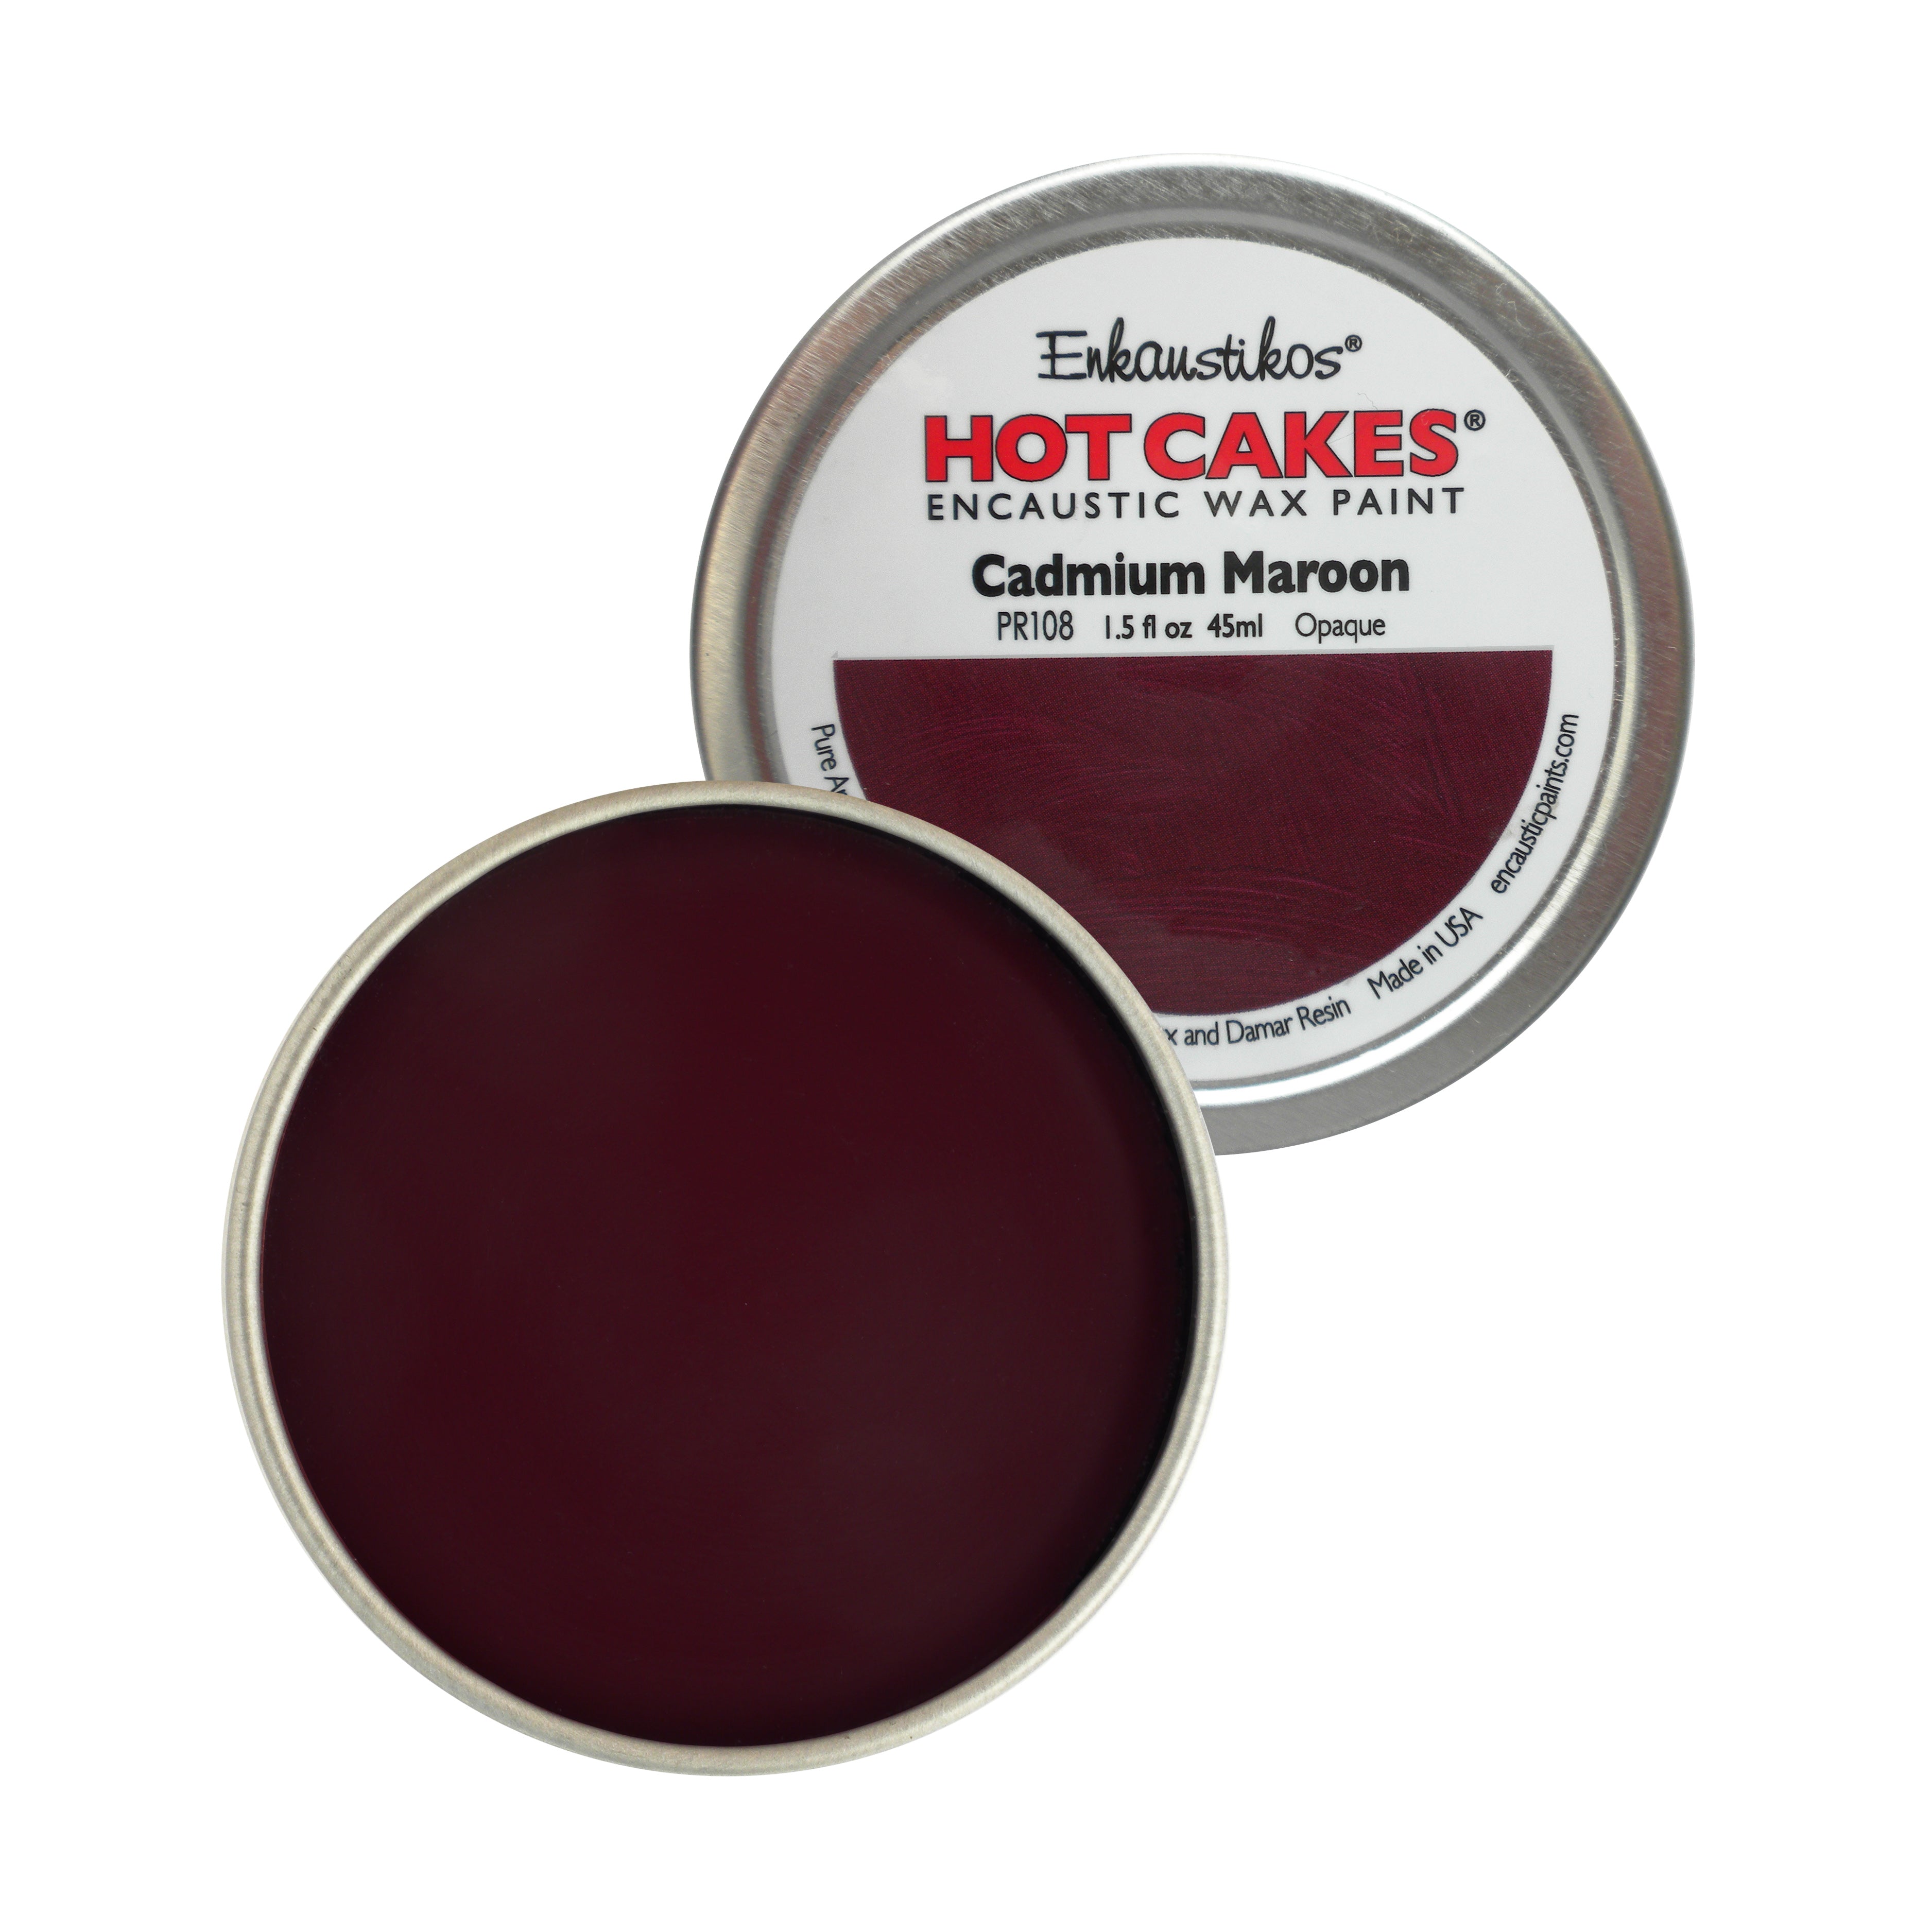 Cadmium Maroon Hot Cakes